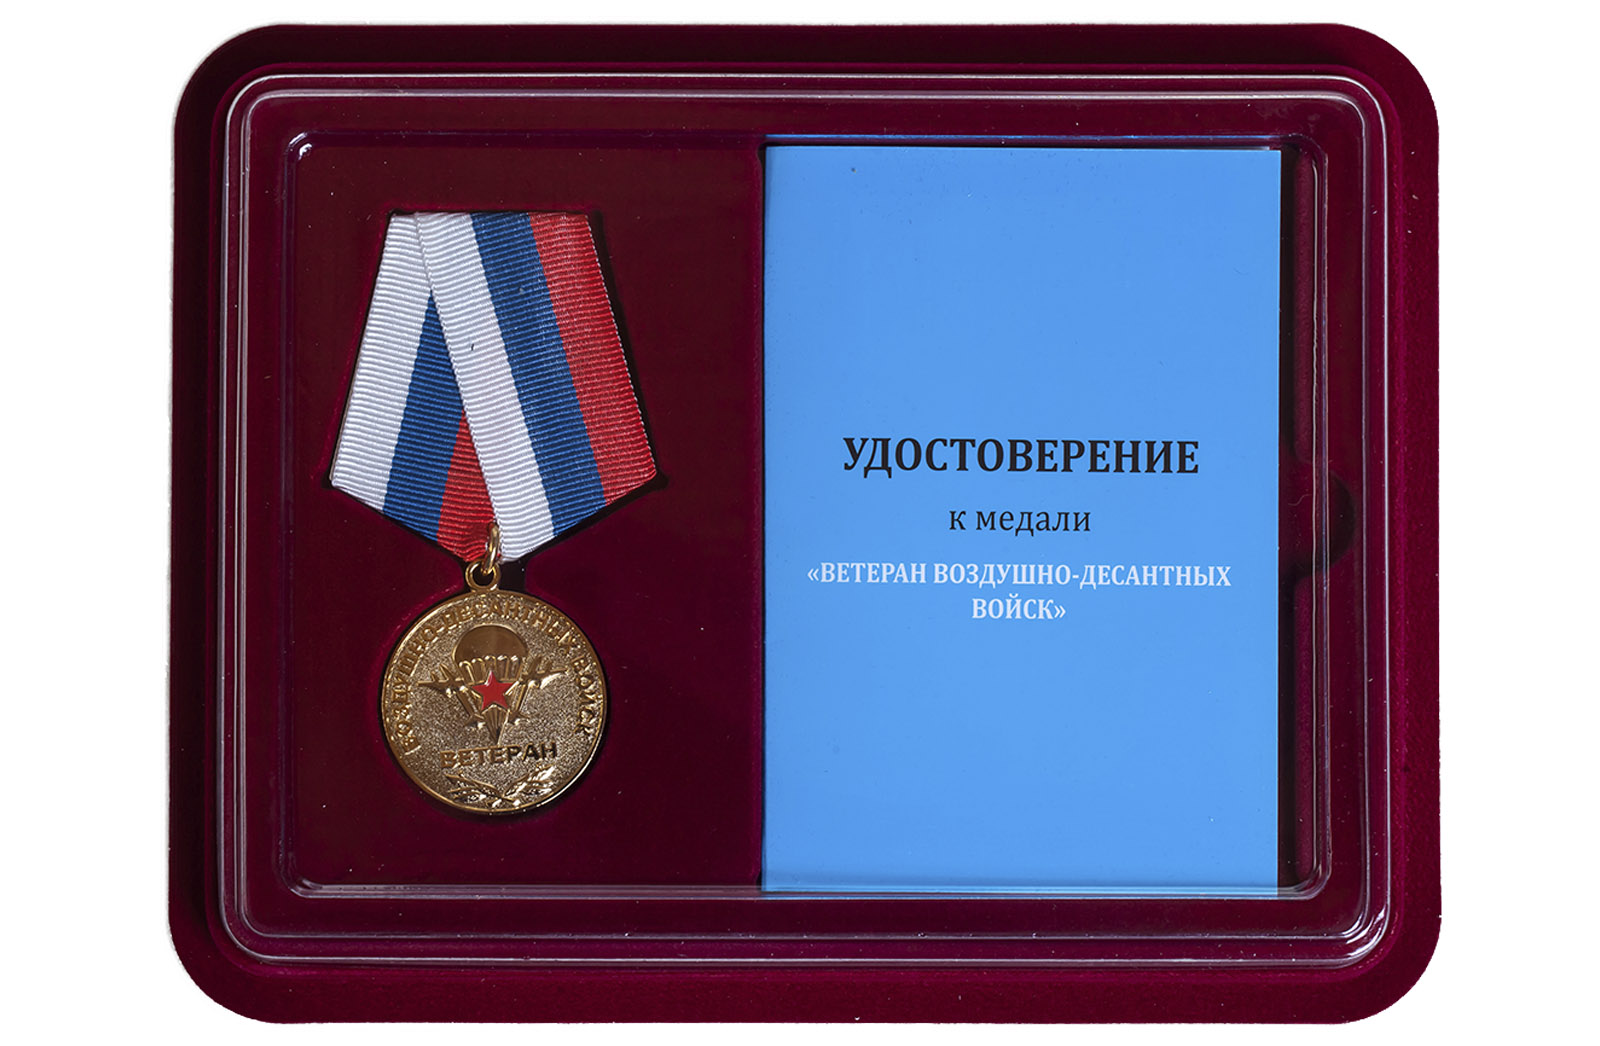 Купить медаль Ветеран Воздушно-десантных войск по лучшей цене